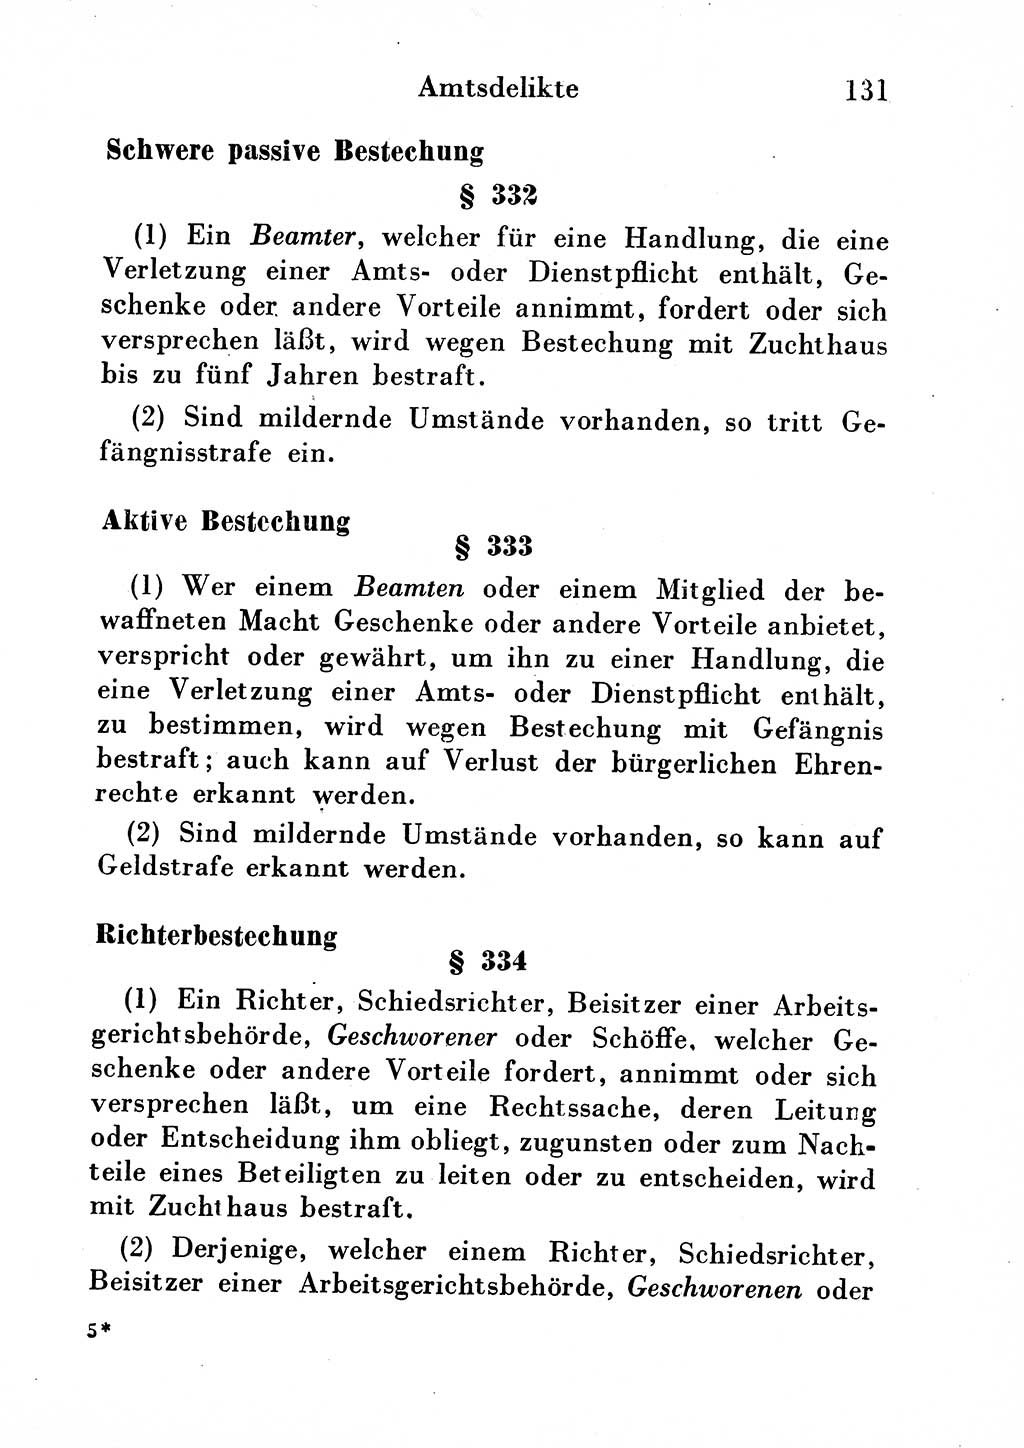 Strafgesetzbuch (StGB) und andere Strafgesetze [Deutsche Demokratische Republik (DDR)] 1954, Seite 131 (StGB Strafges. DDR 1954, S. 131)